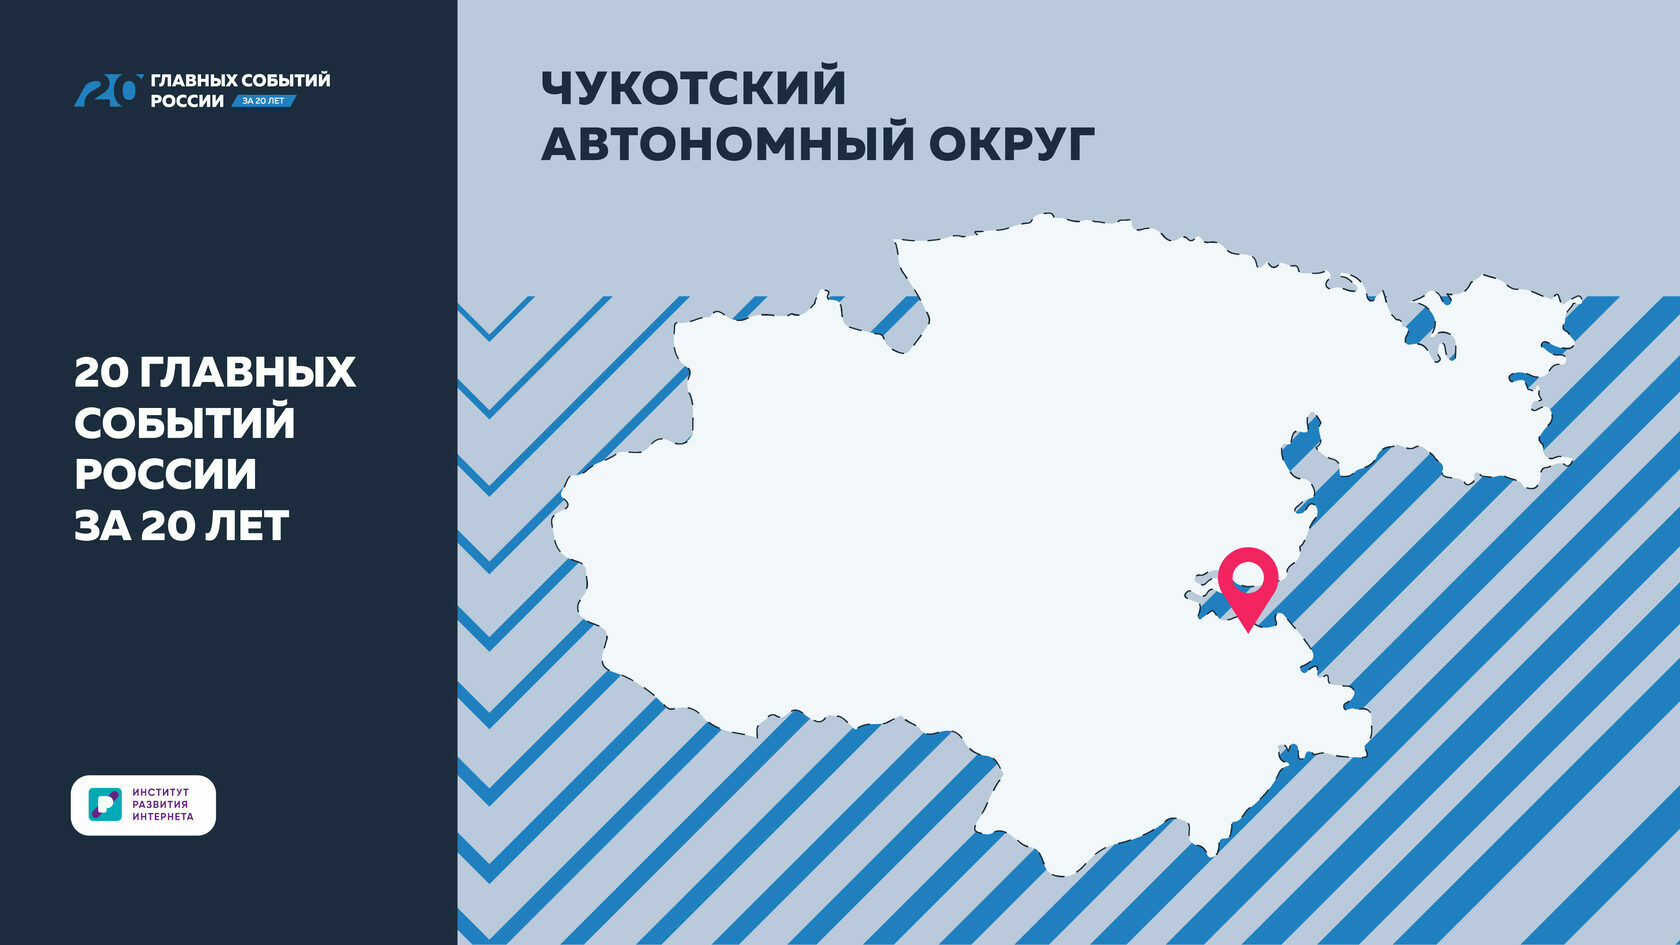 20 главных событий России за 20 лет: Чукотский автономный округ